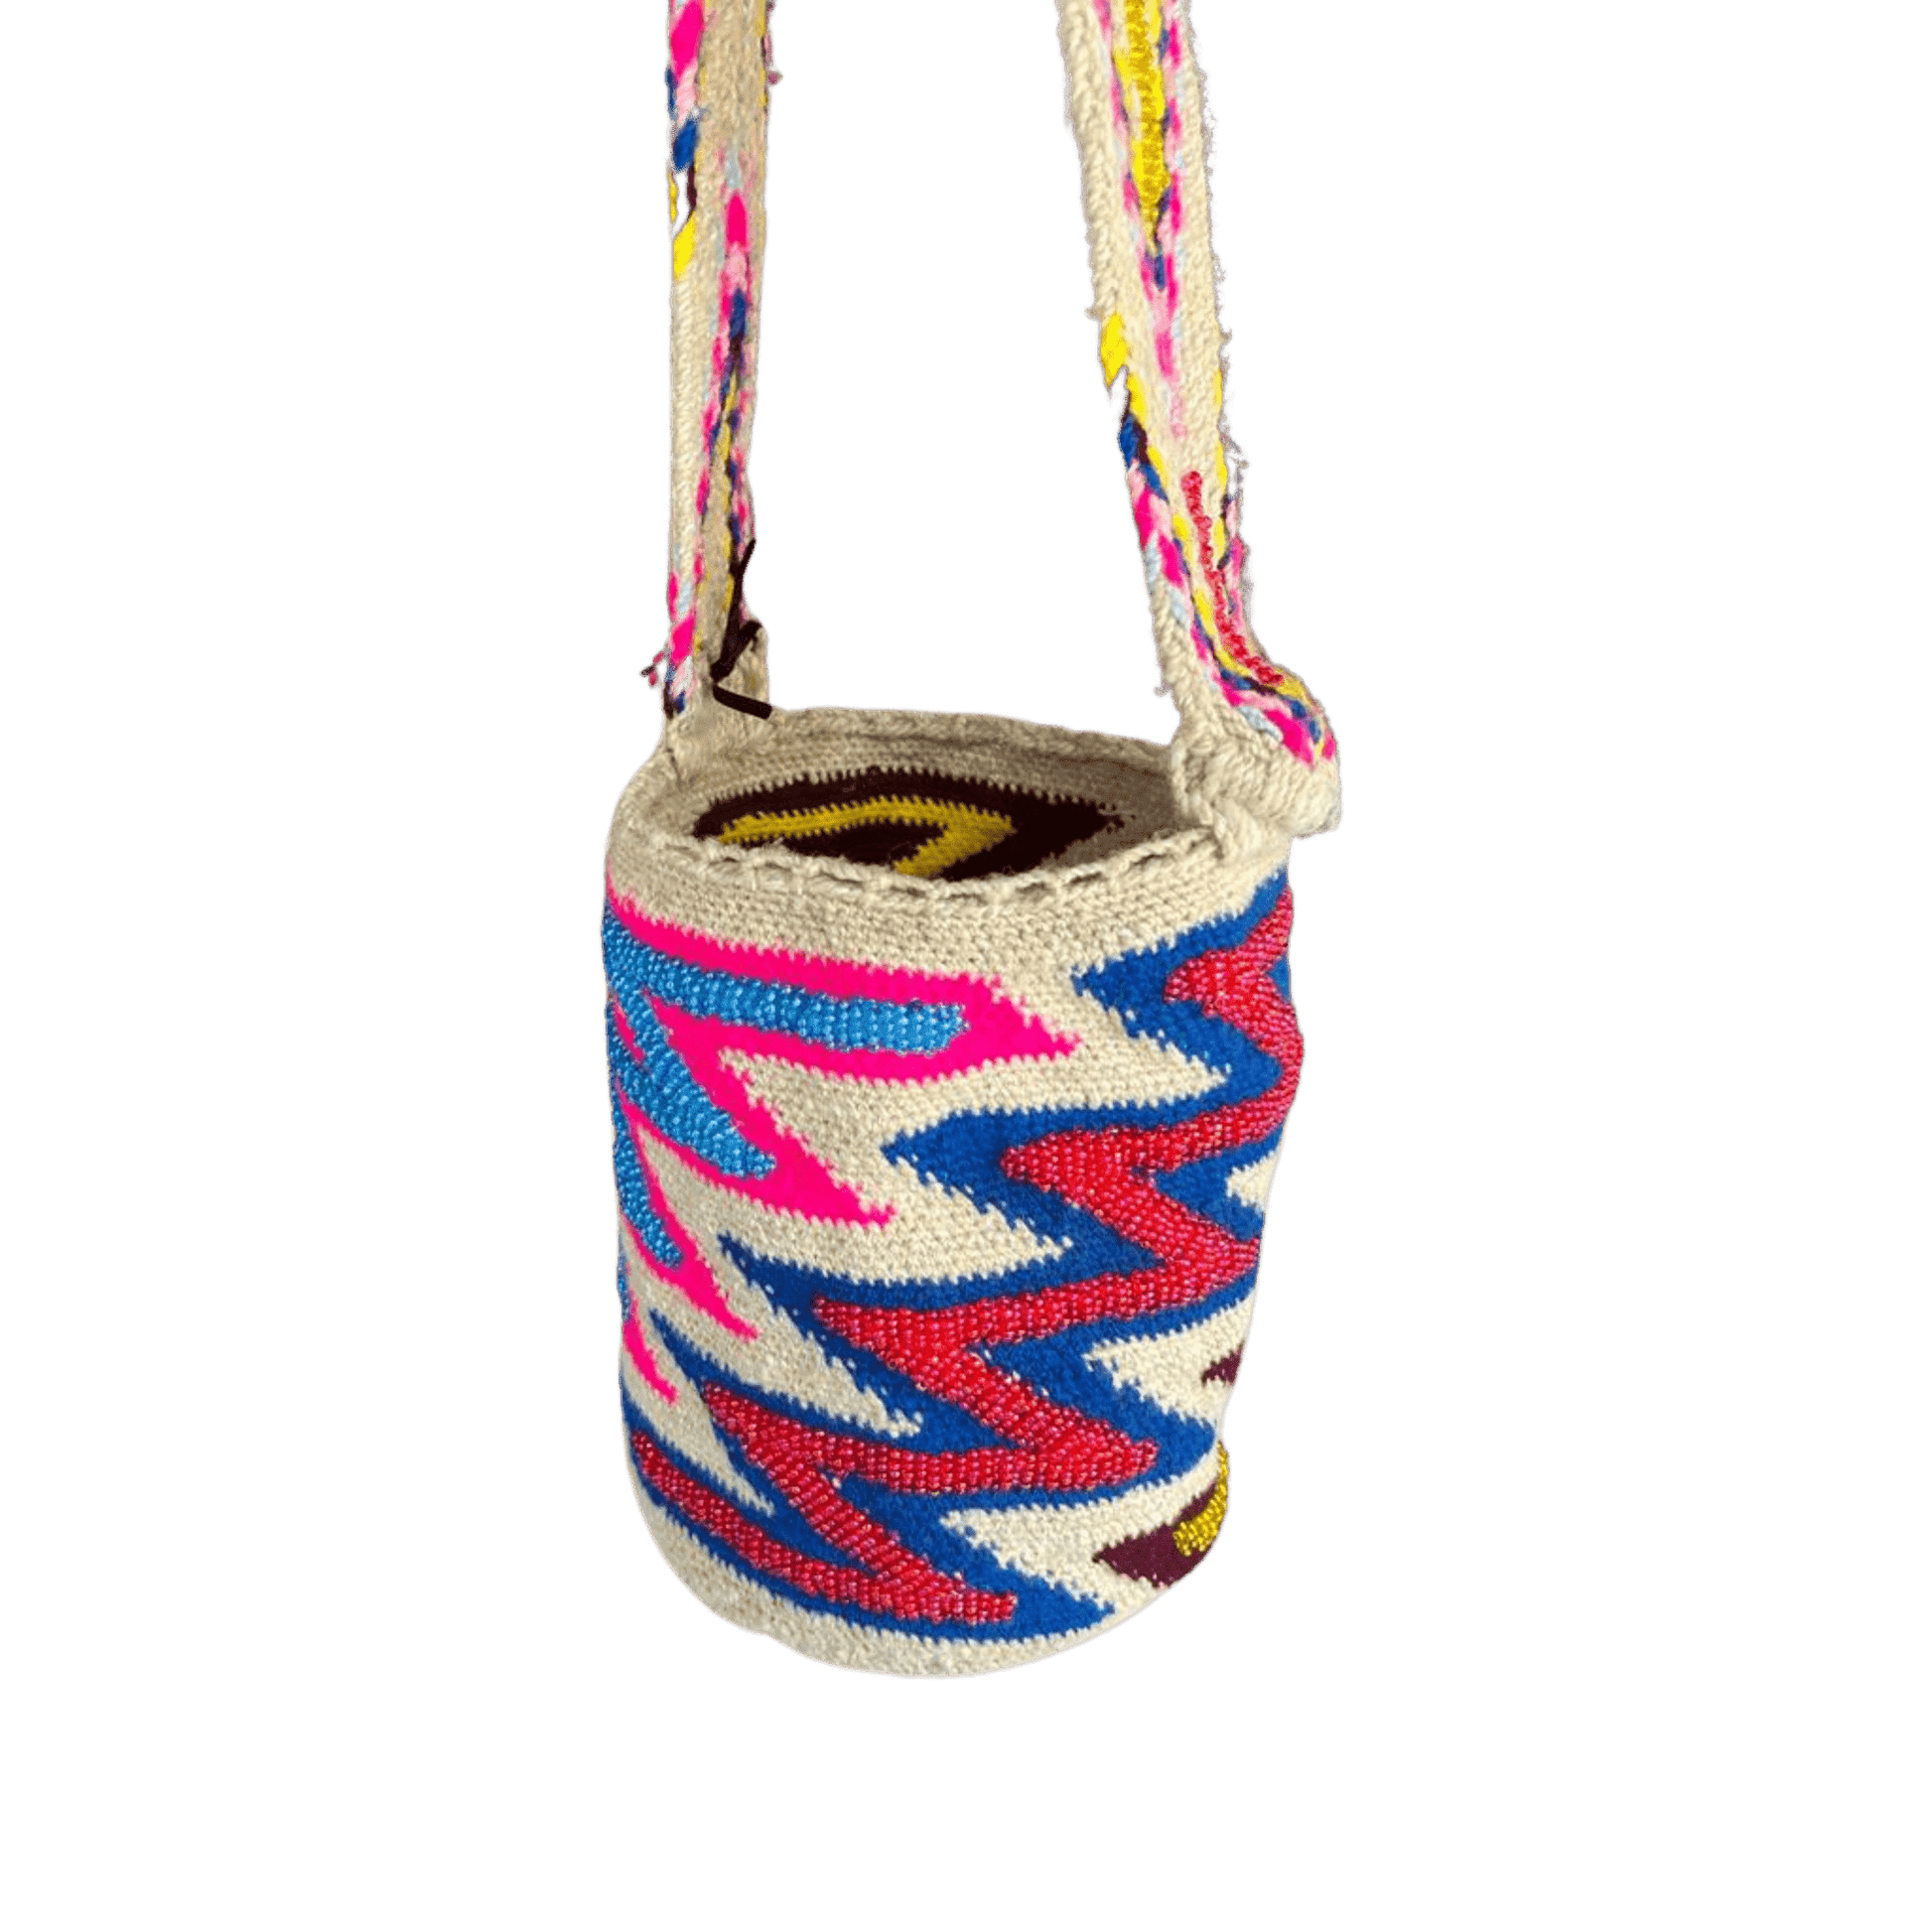 Mochila arhuaca de colores con diseño en zigzag con chaquiras de colores azul, rosado y amarillo